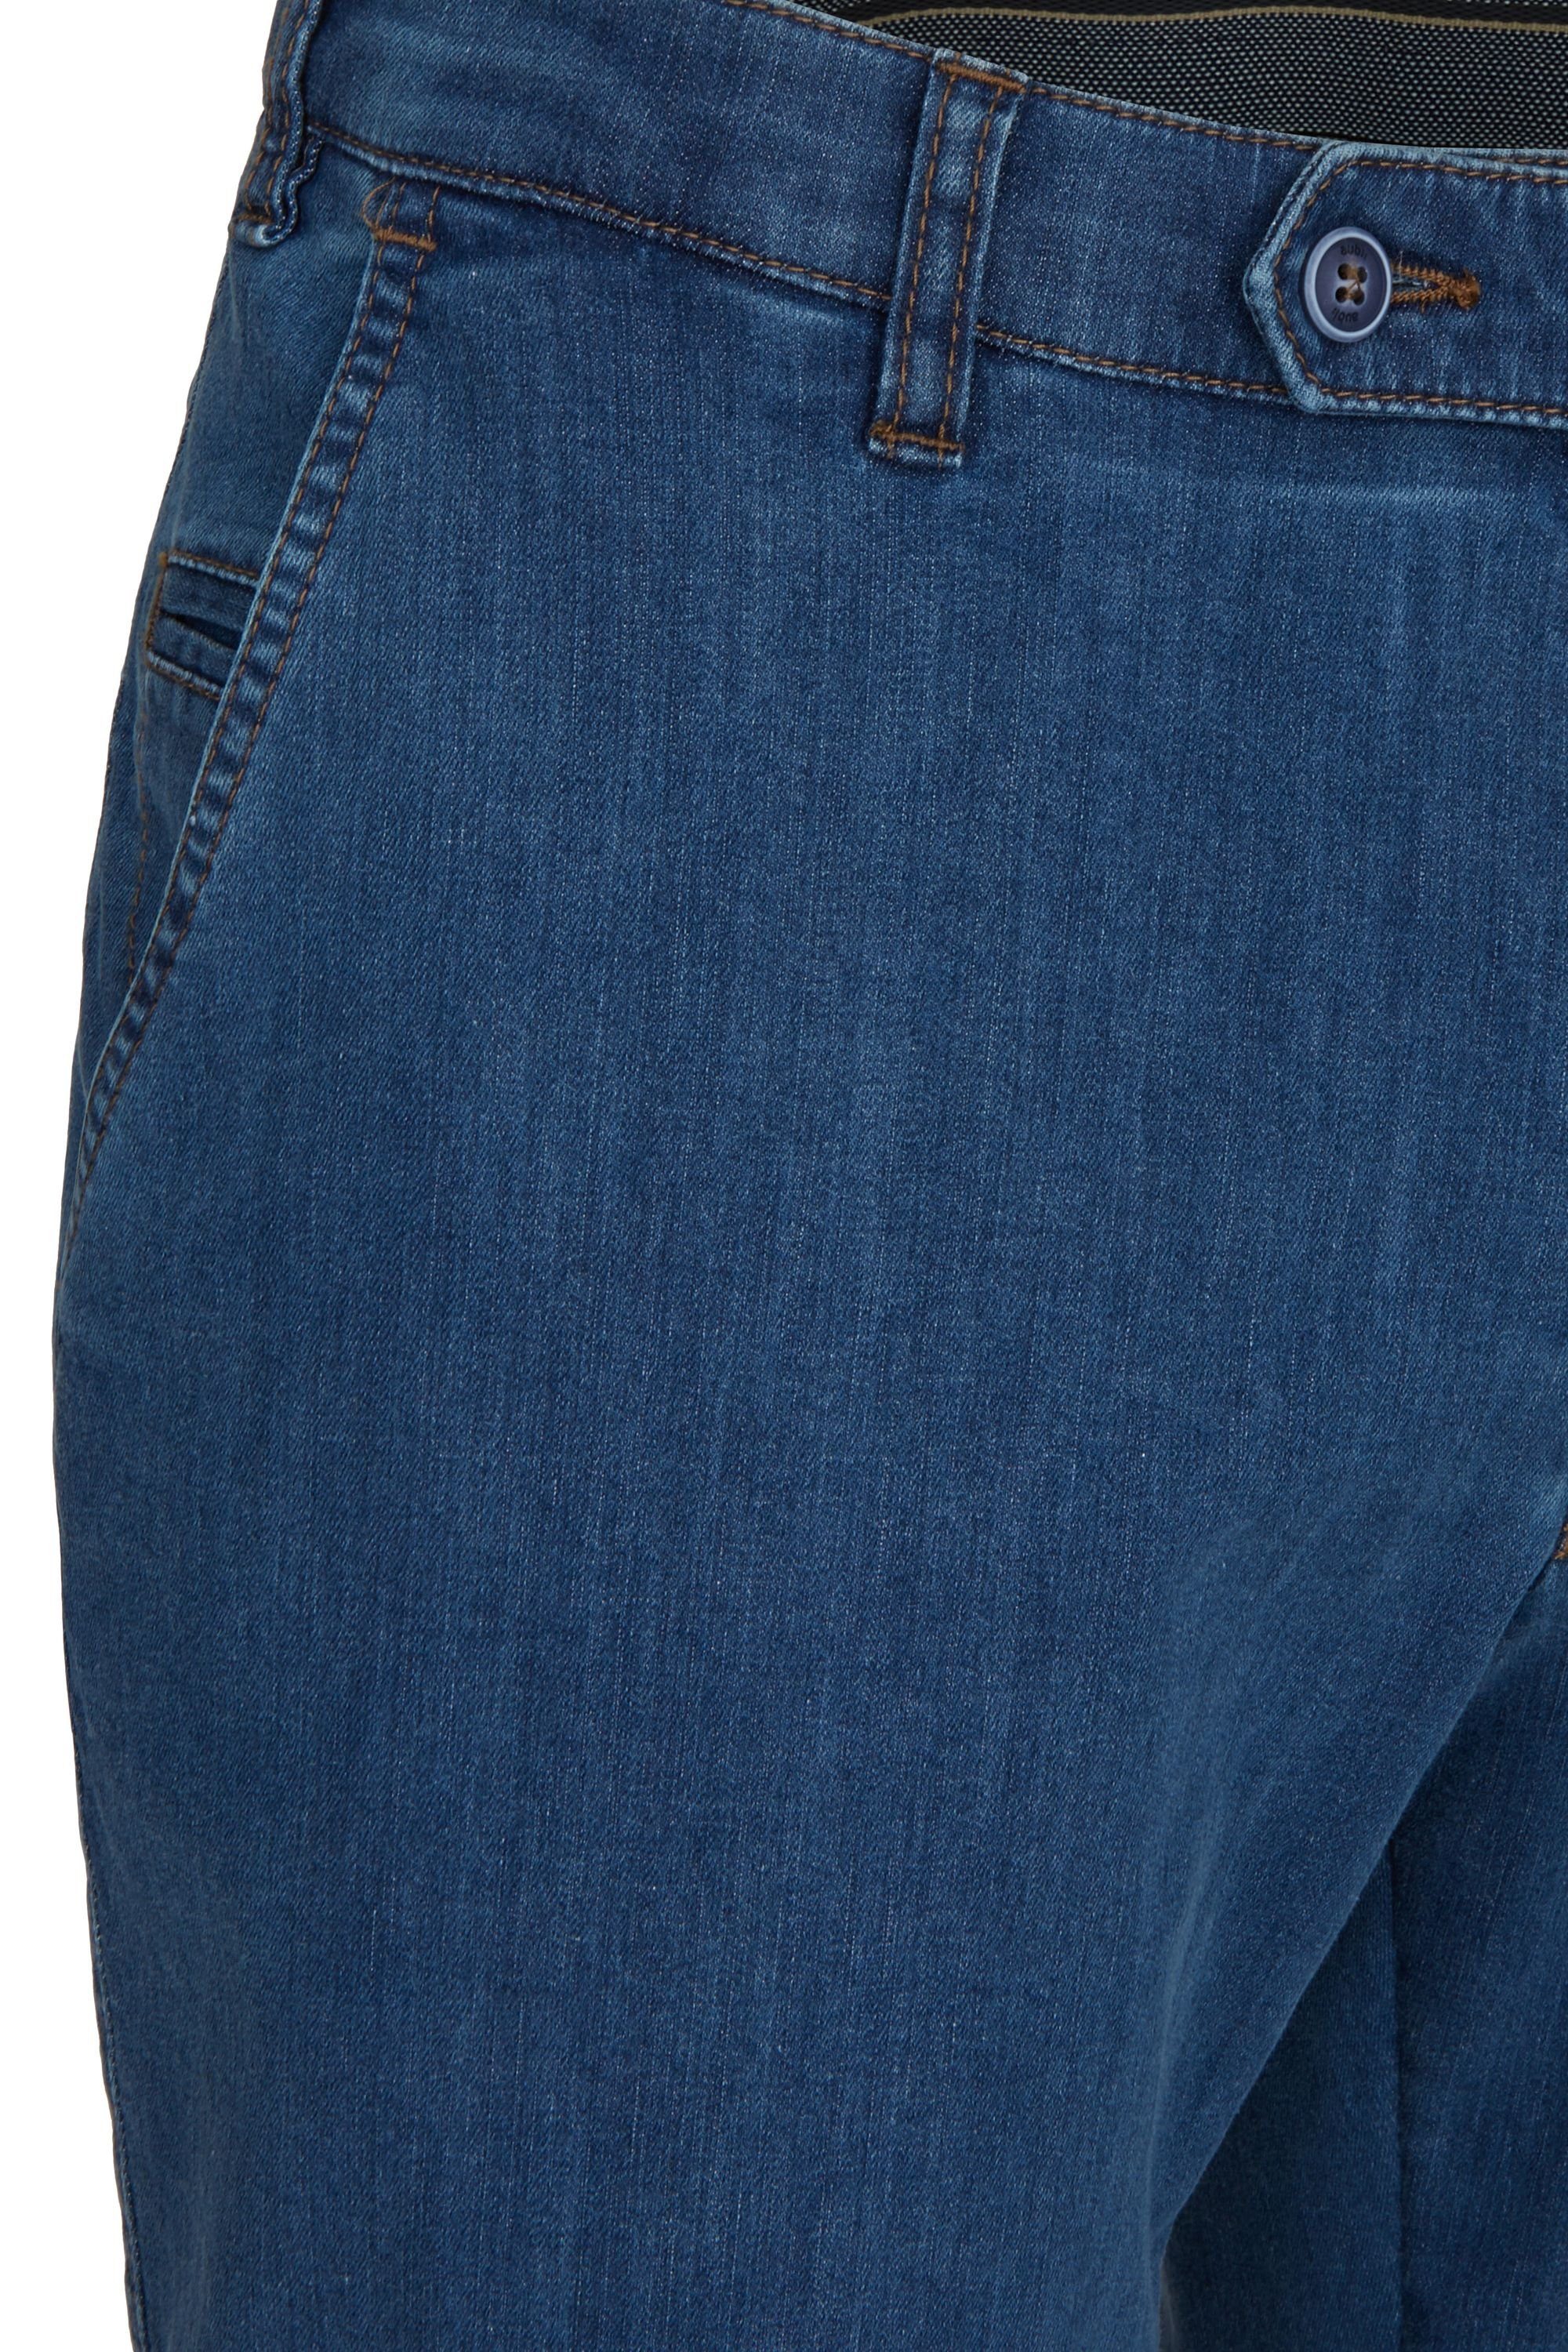 Flex Herren aubi: Fit Bequeme Stretch Perfect High Modell Hose aus Jeans Jeans stone Baumwolle Sommer 526 (46) aubi